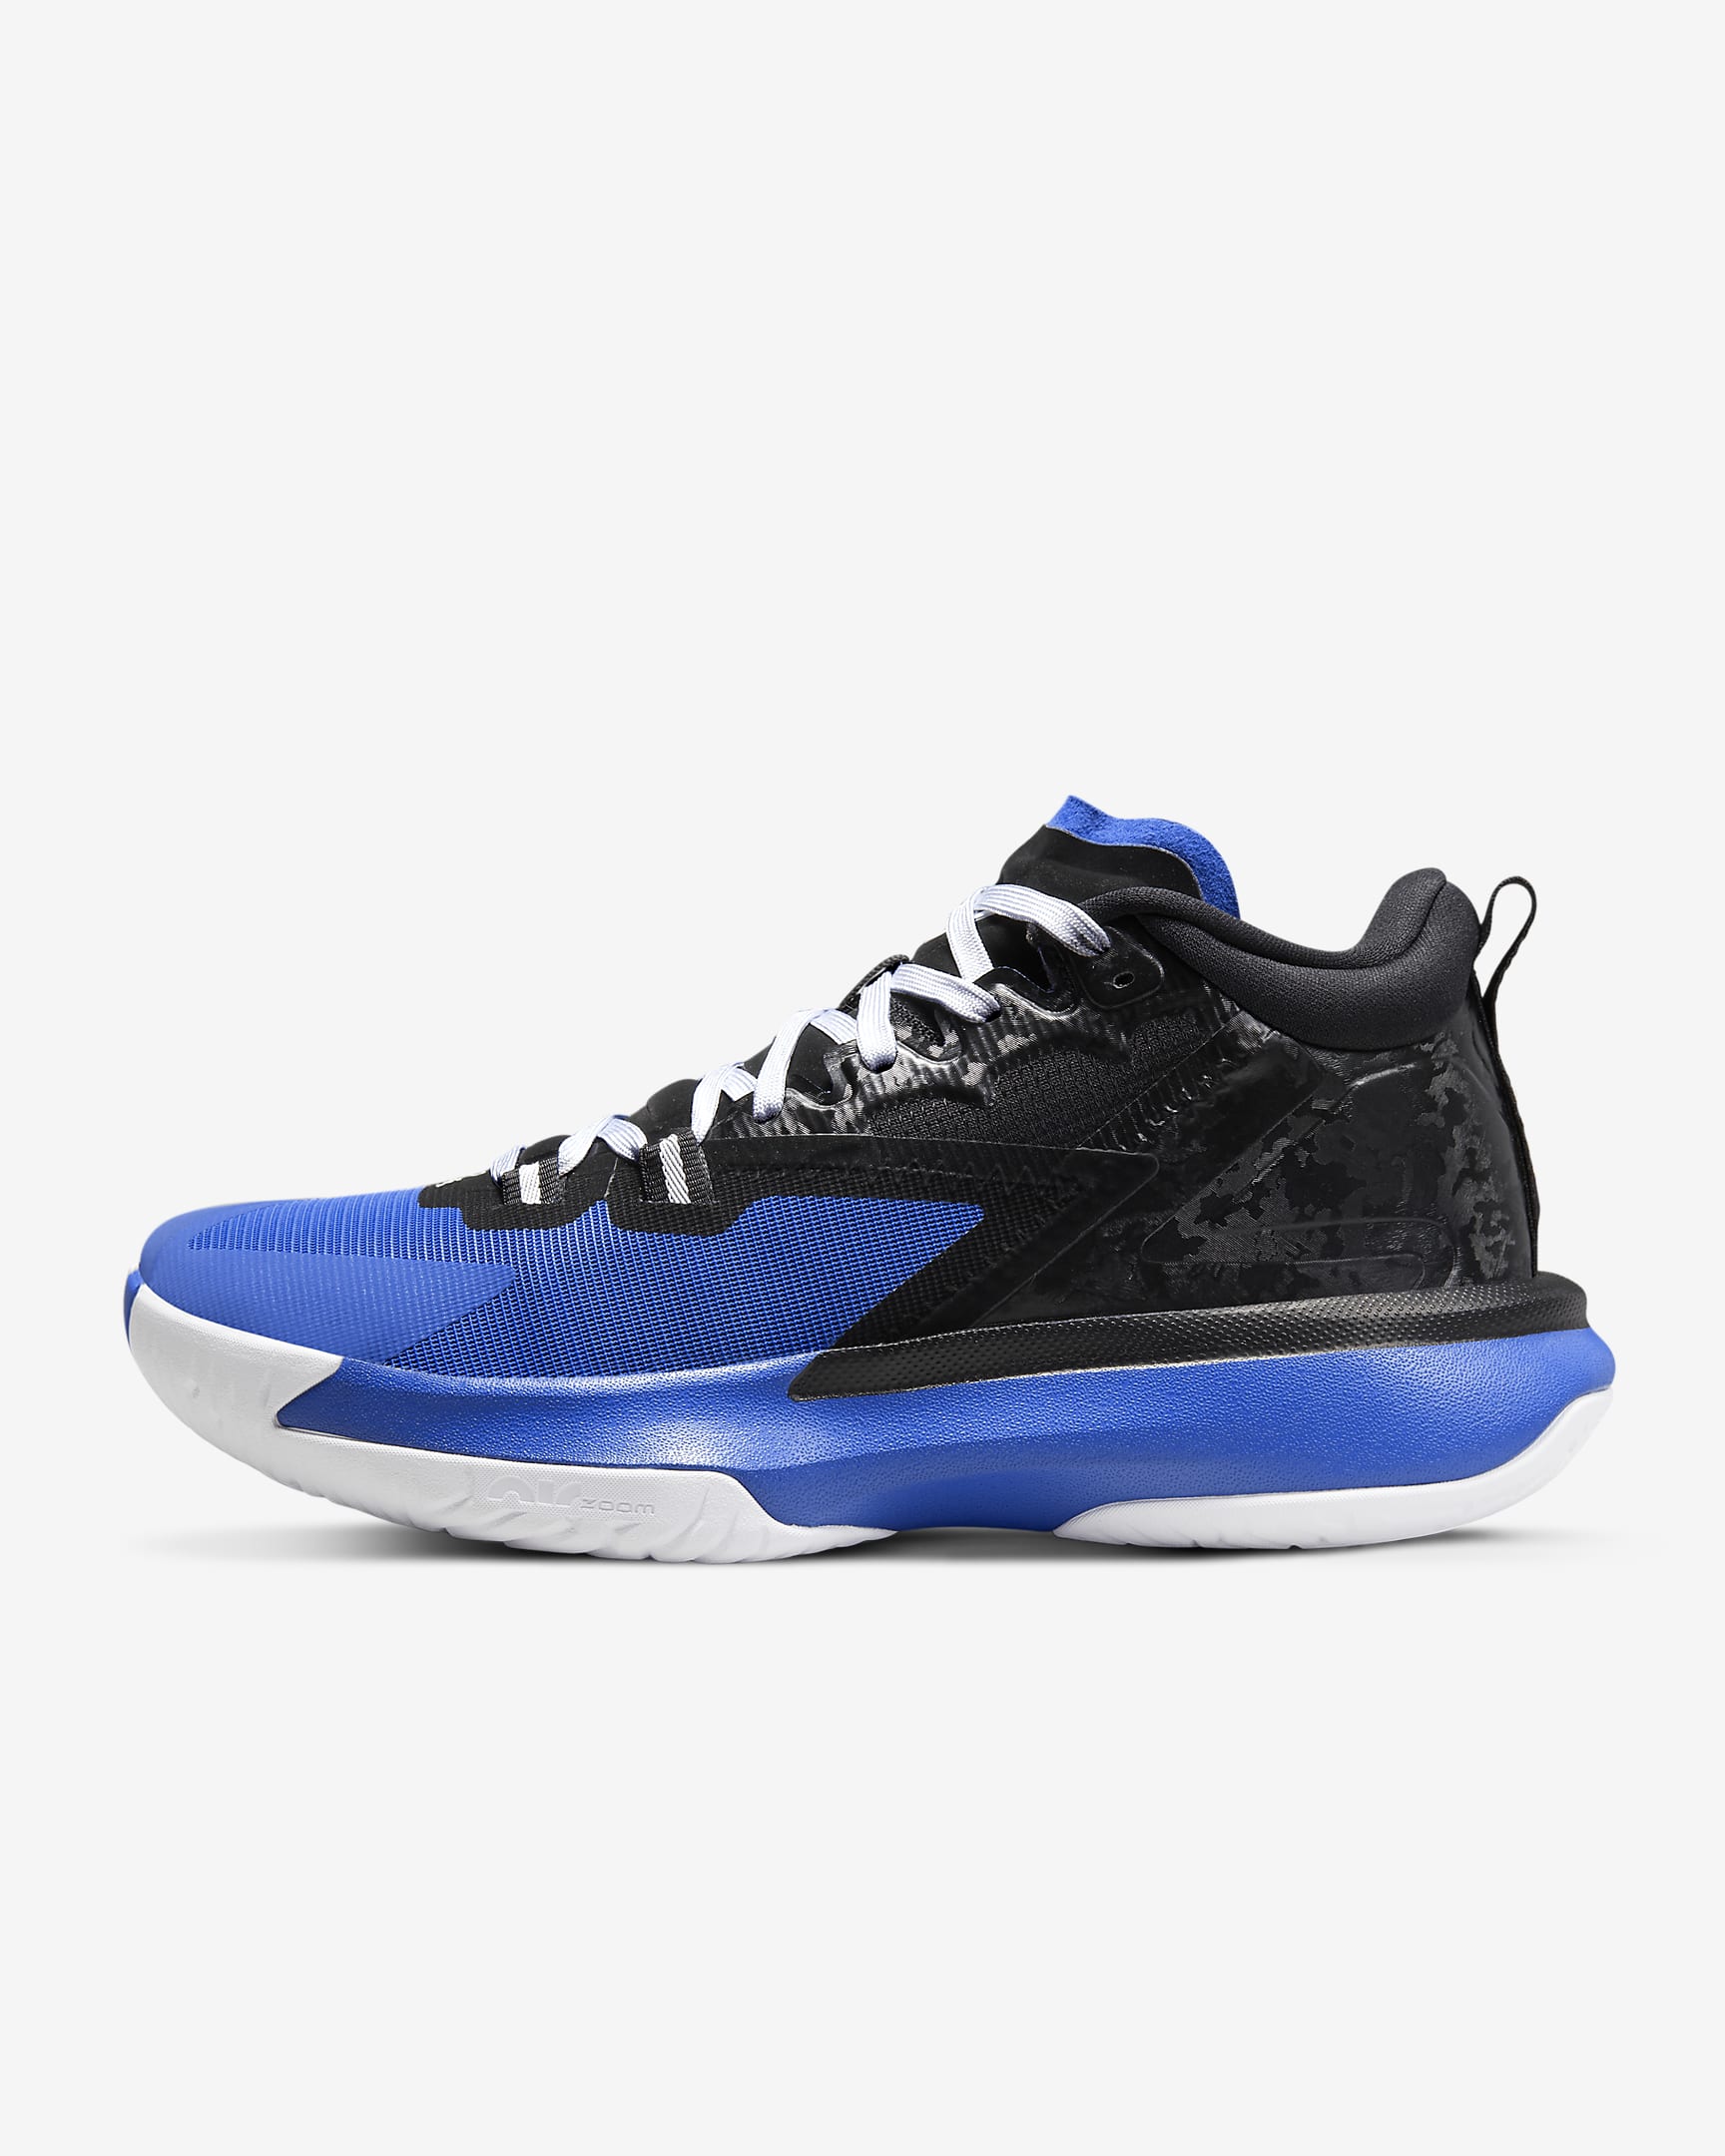 Nike Men's Zion 1 Basketball Shoes (Black/Hyper Royal/White)